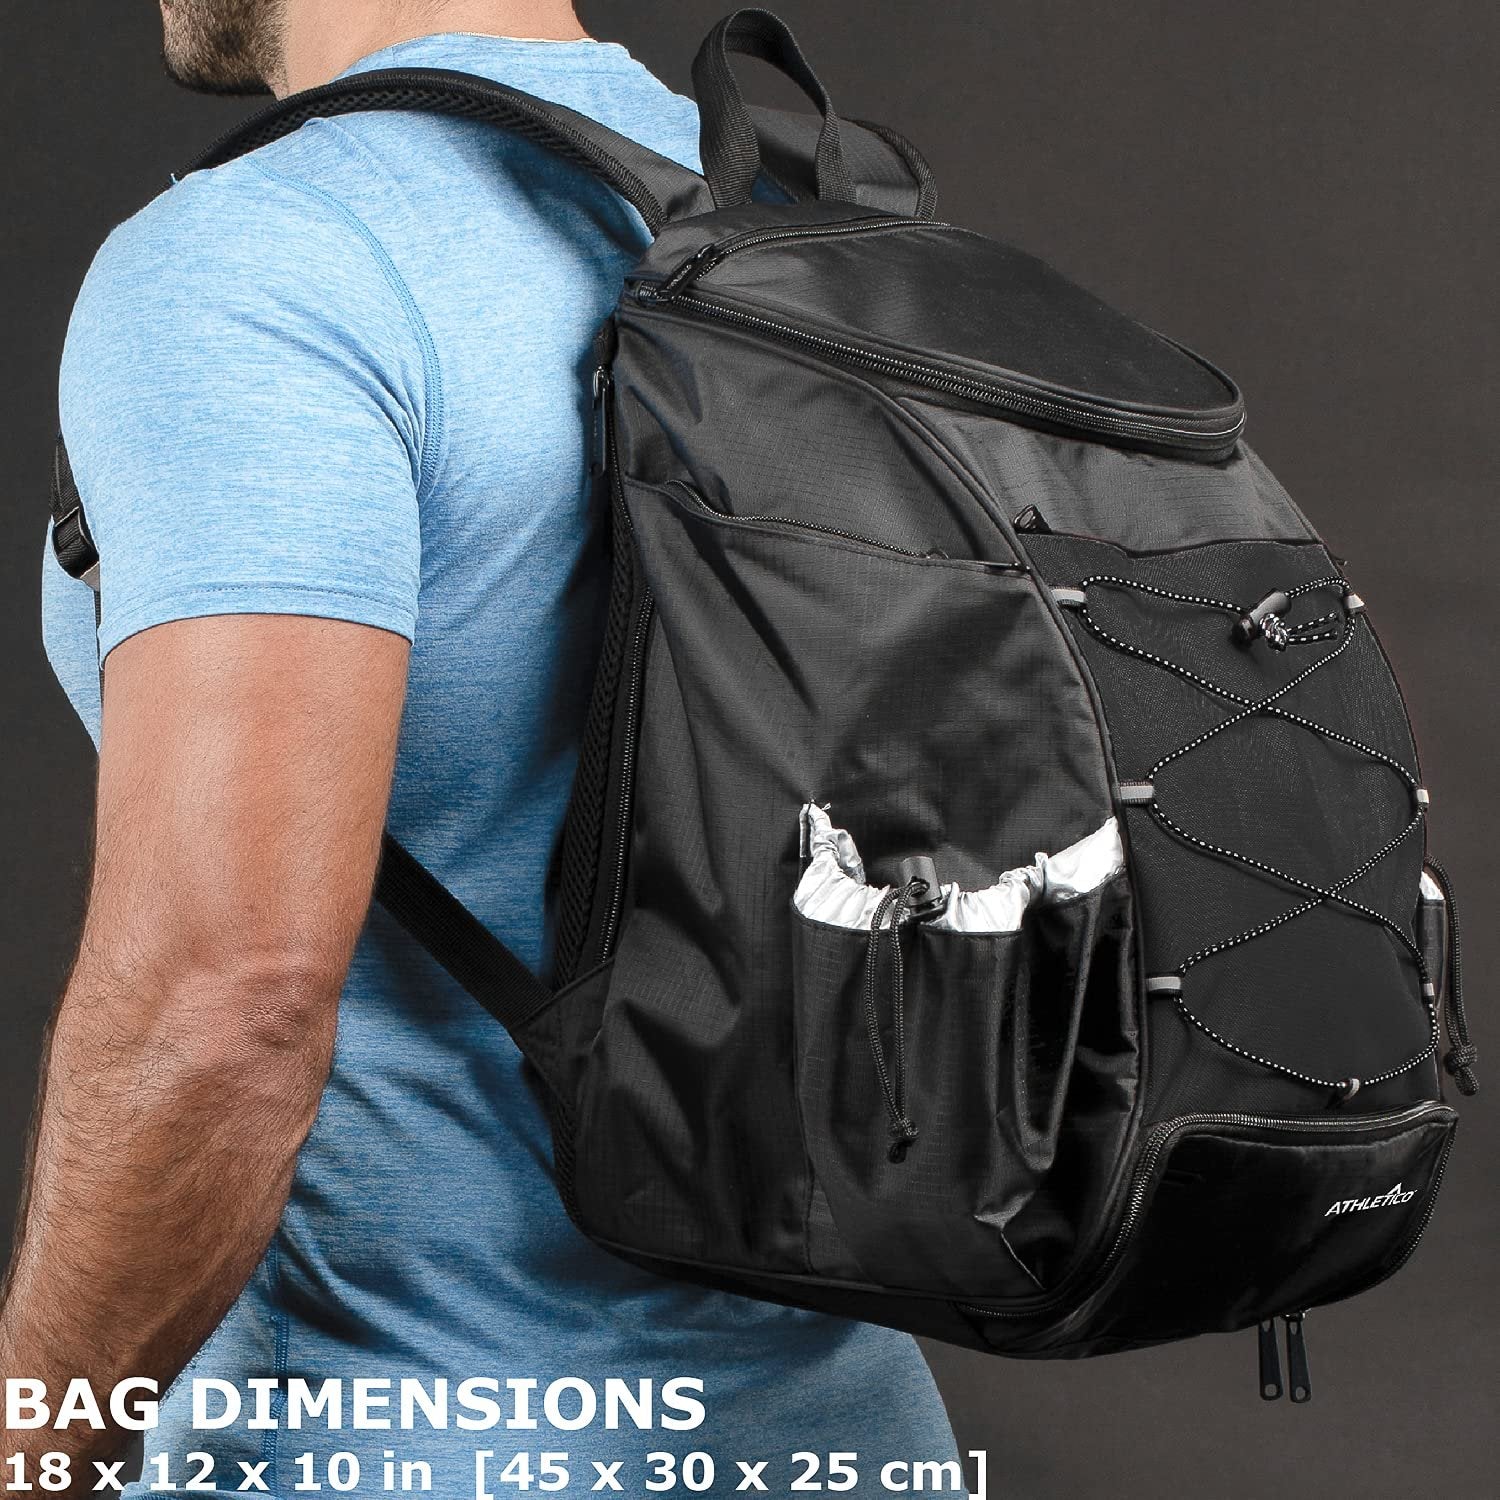 Athletico Pickleball Backpack - Pickleball Bags for Men or Women Includes Pickleball Ball Holder (Black)